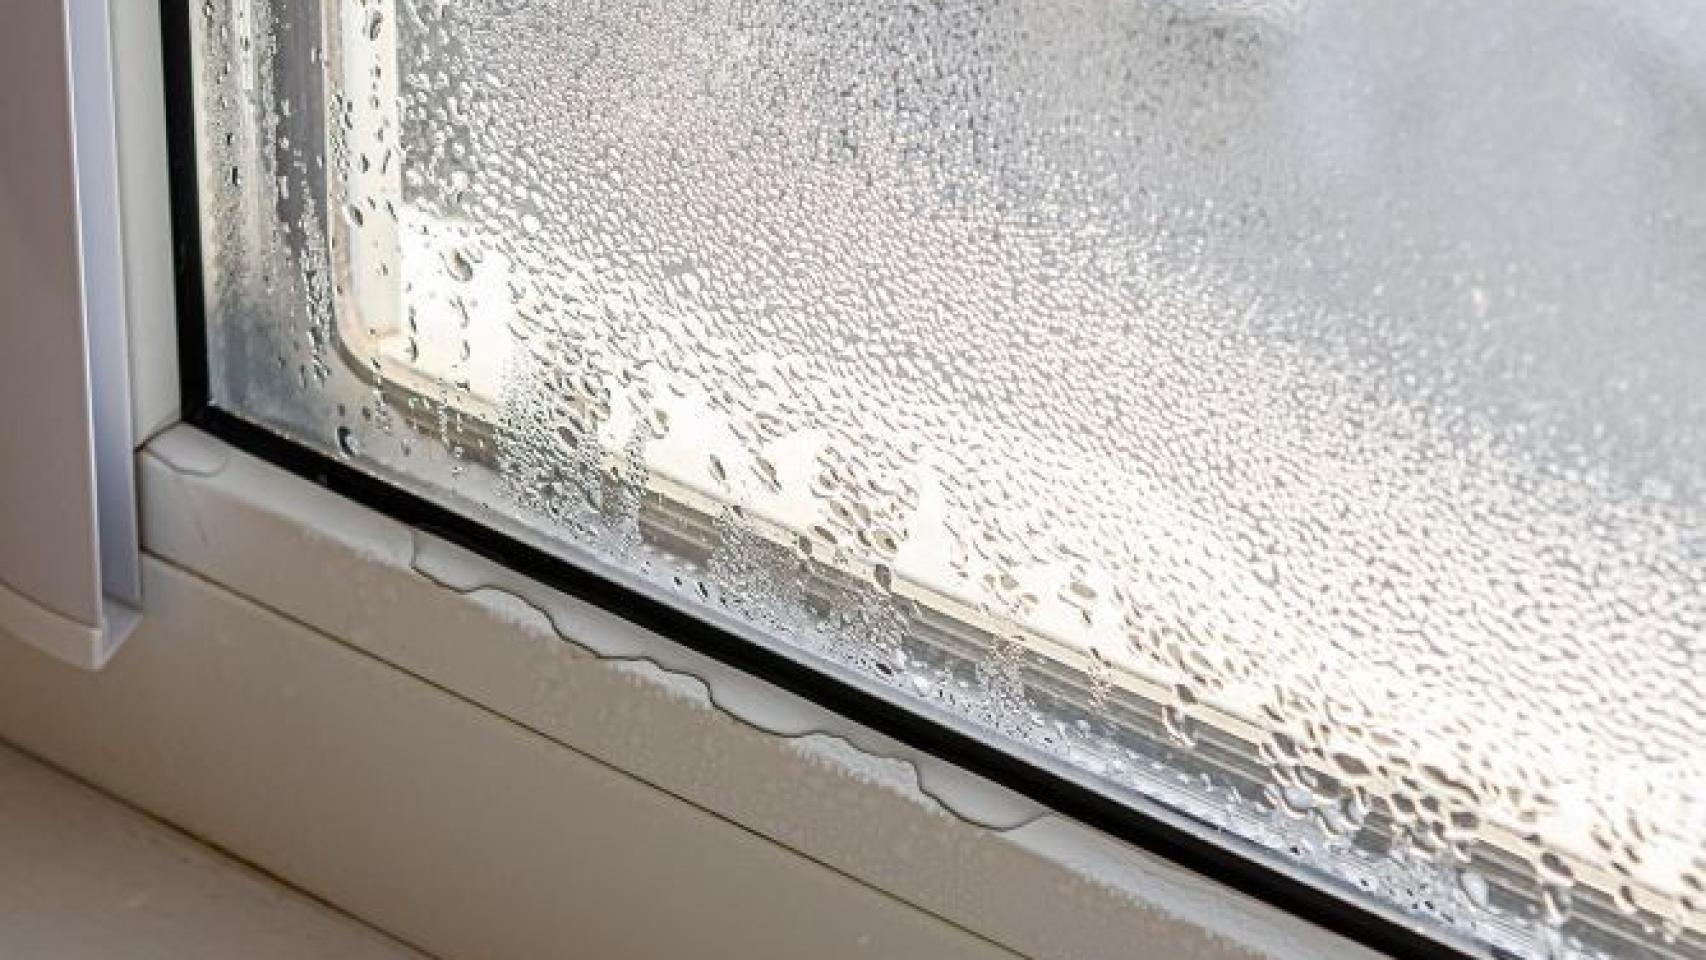 Cómo puedo evitar la condensación en las ventanas? - Impermeabilización